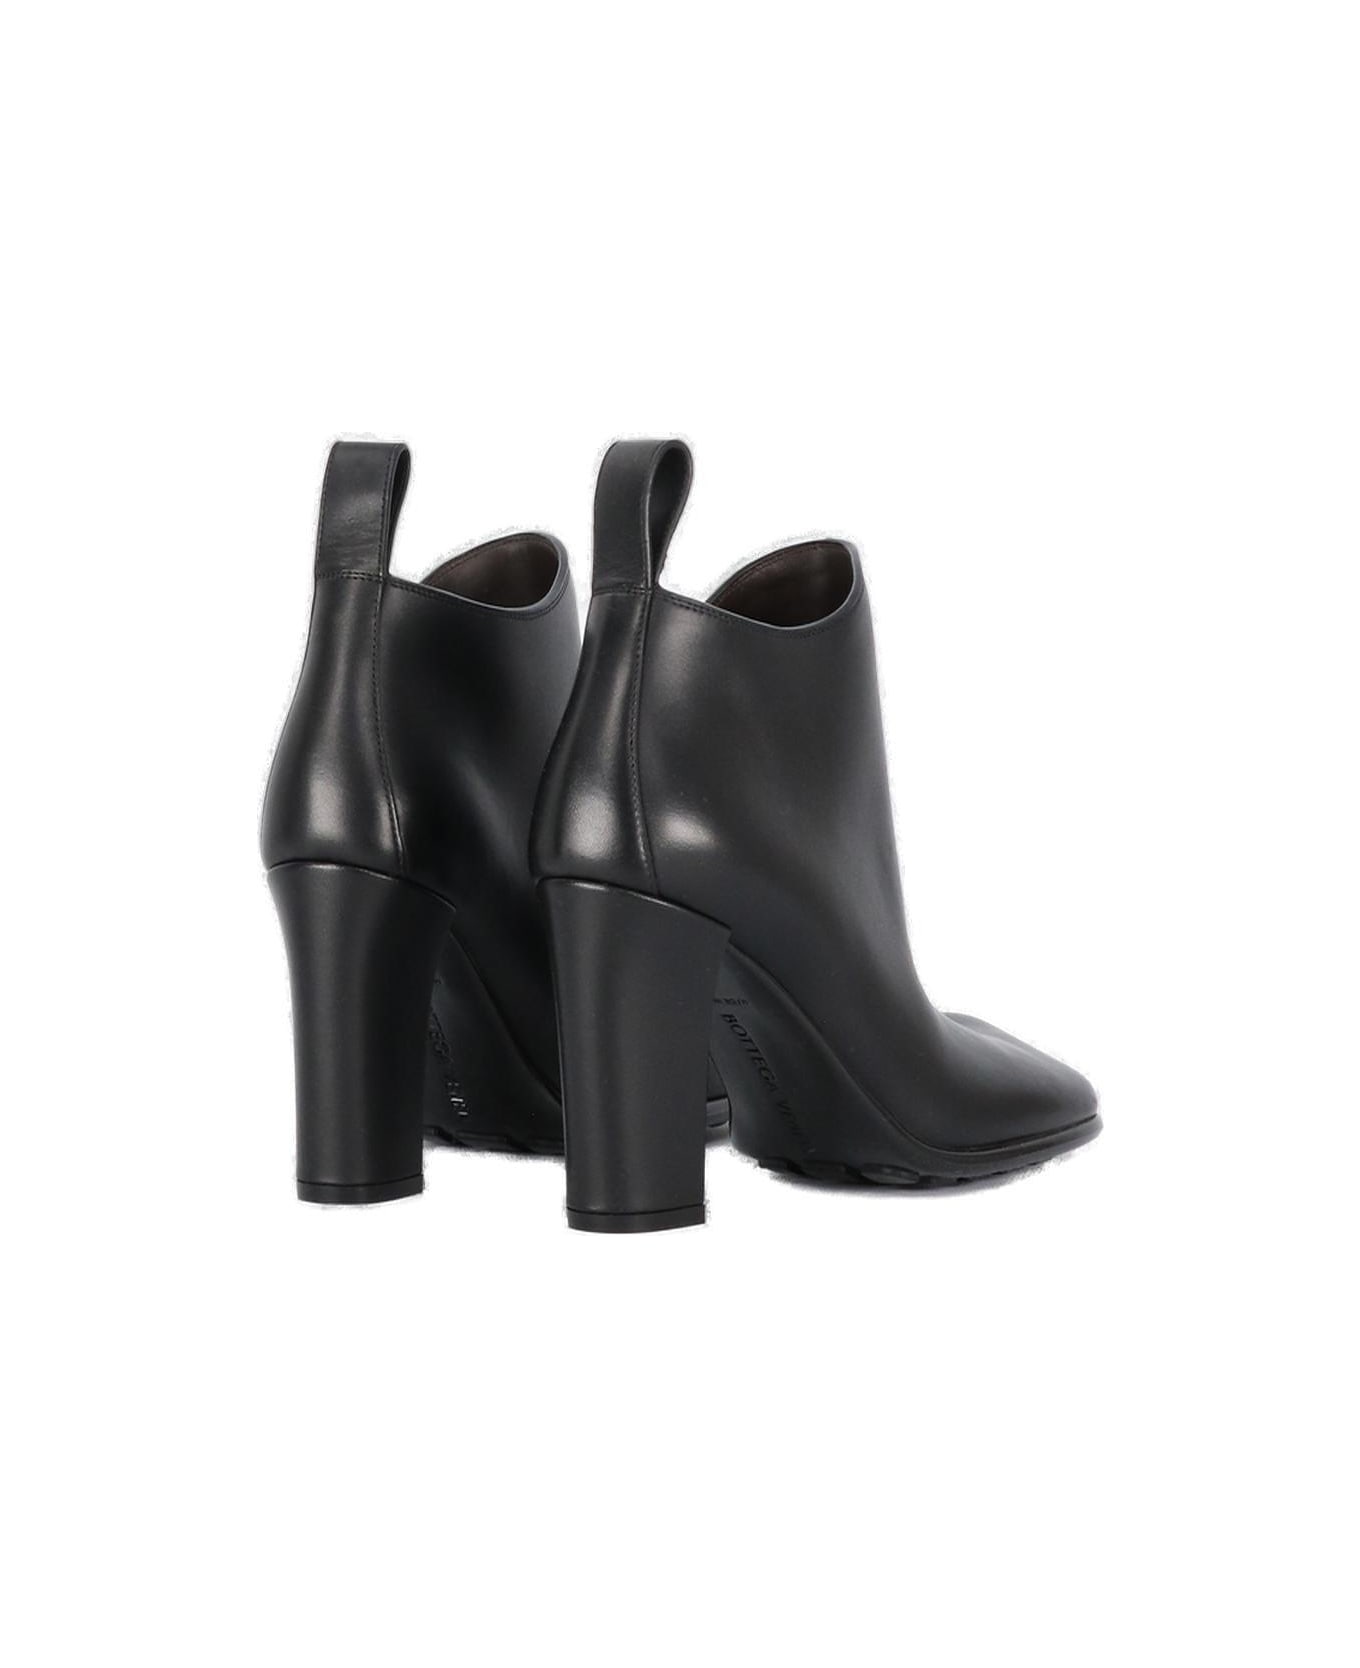 Bottega Veneta Square Toe Ankle Boots - Black ブーツ